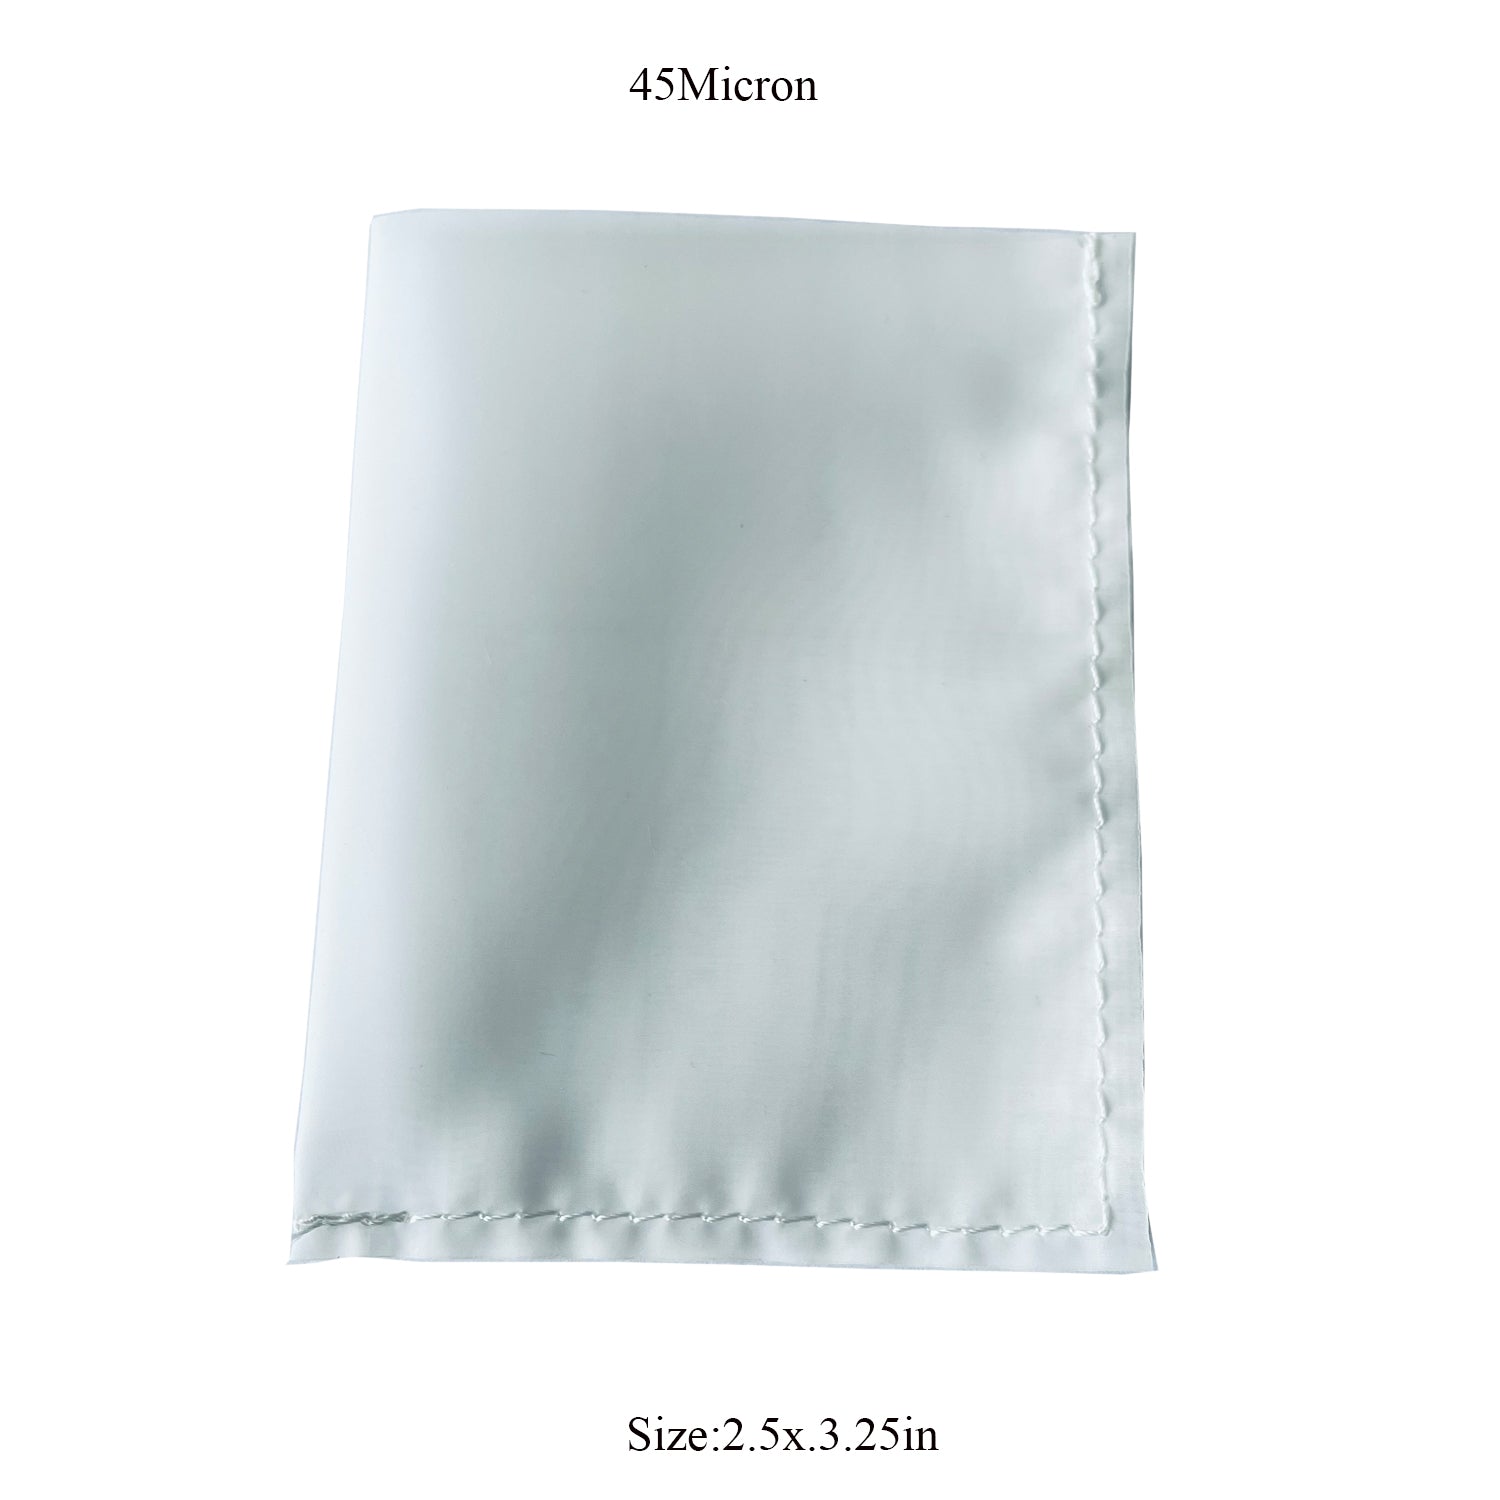 10 Pack 45 Micron 2.5"x3.25" Rosin bag